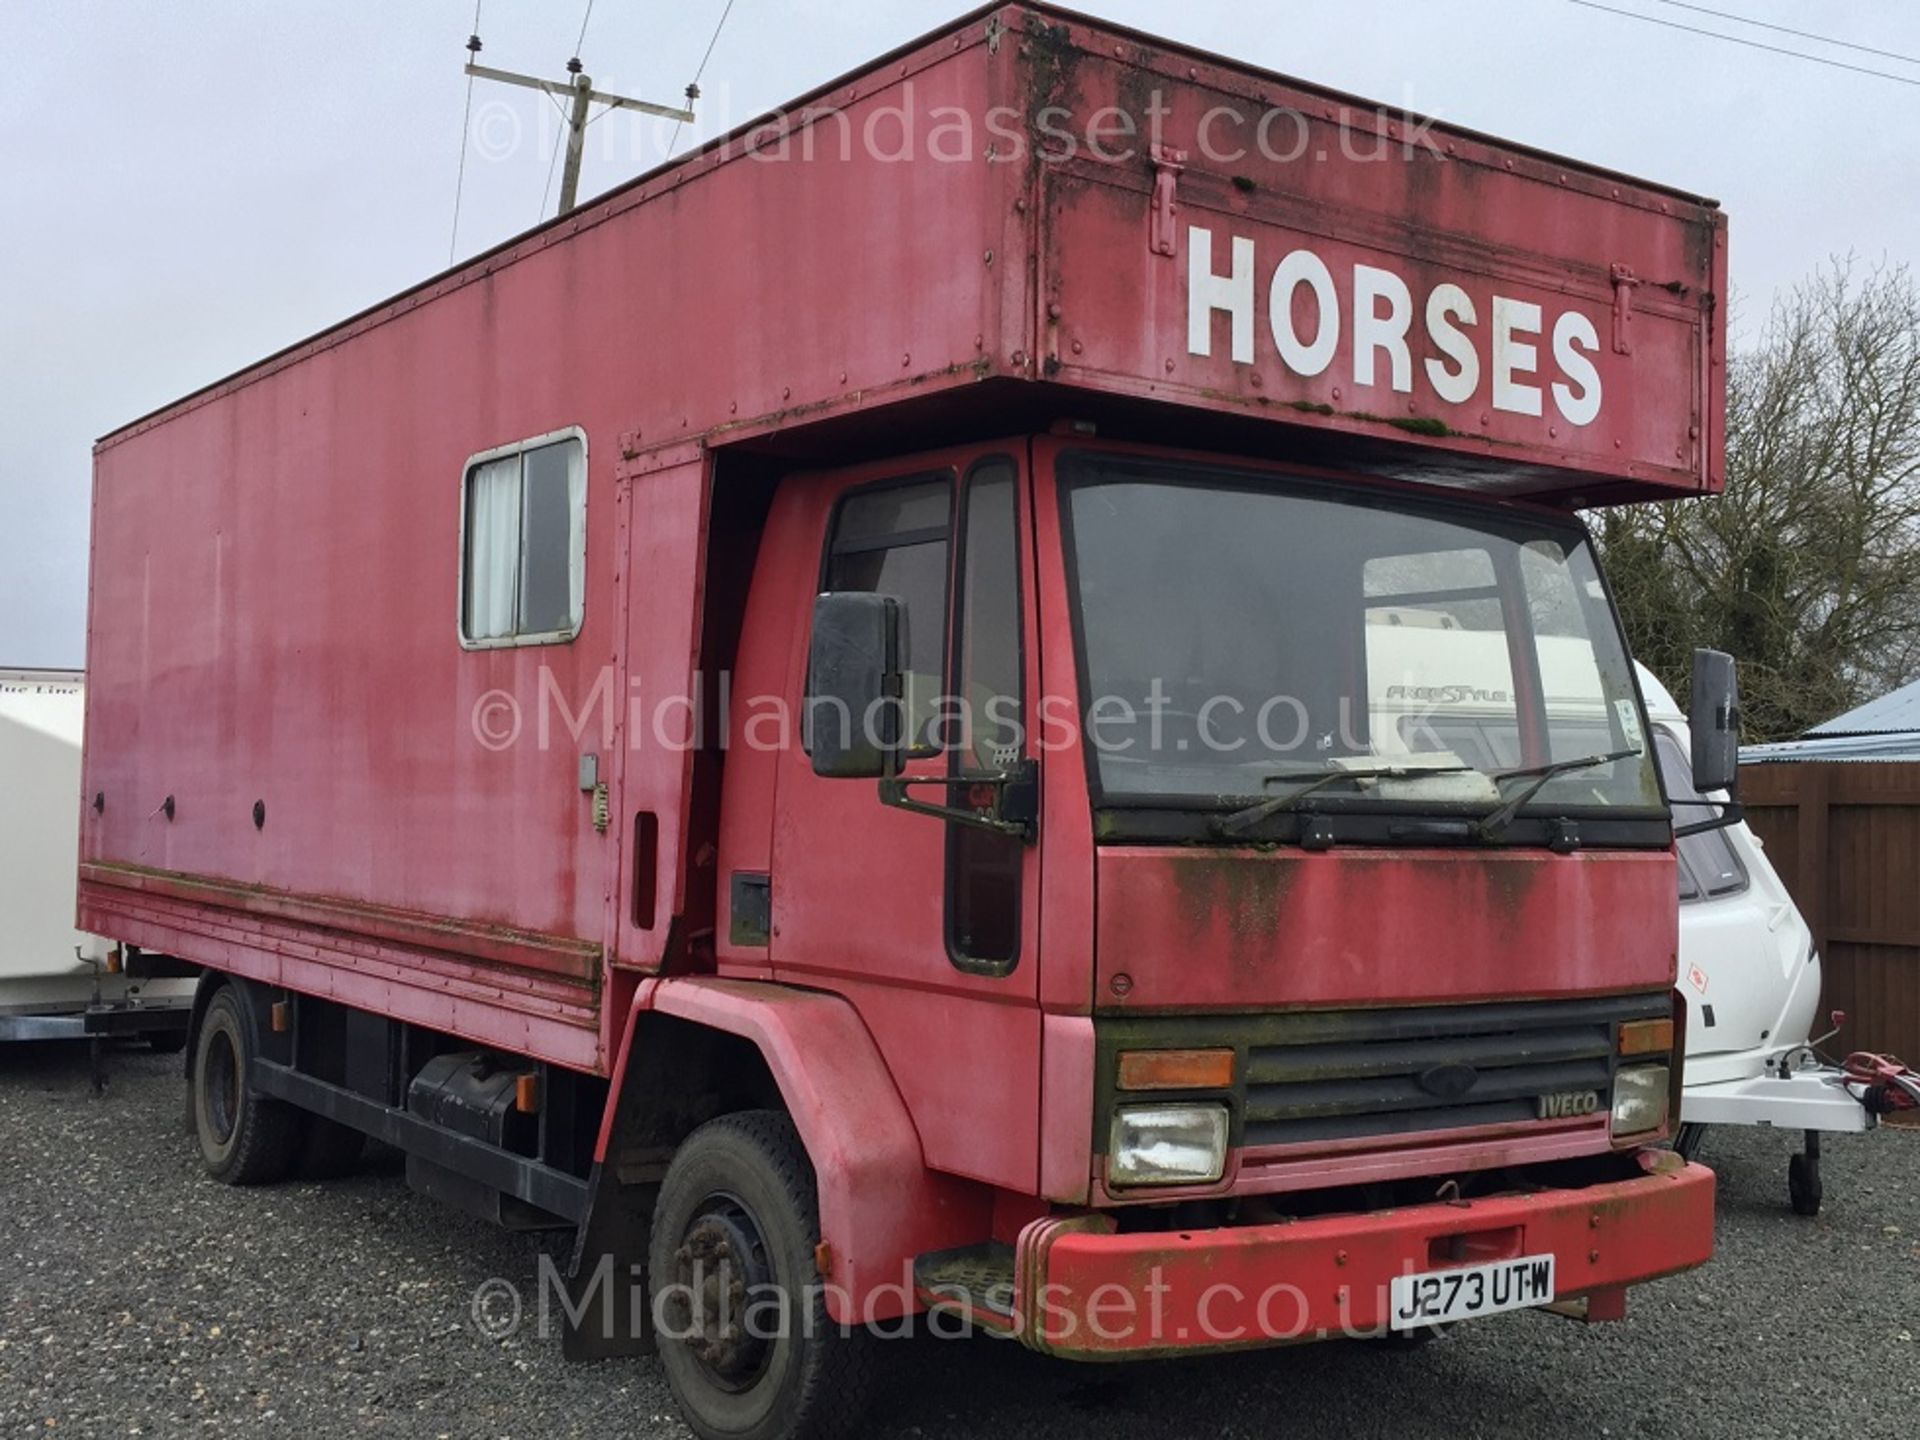 1991/J REG IVECO CARGO 913 HORSE BOX *NO VAT*